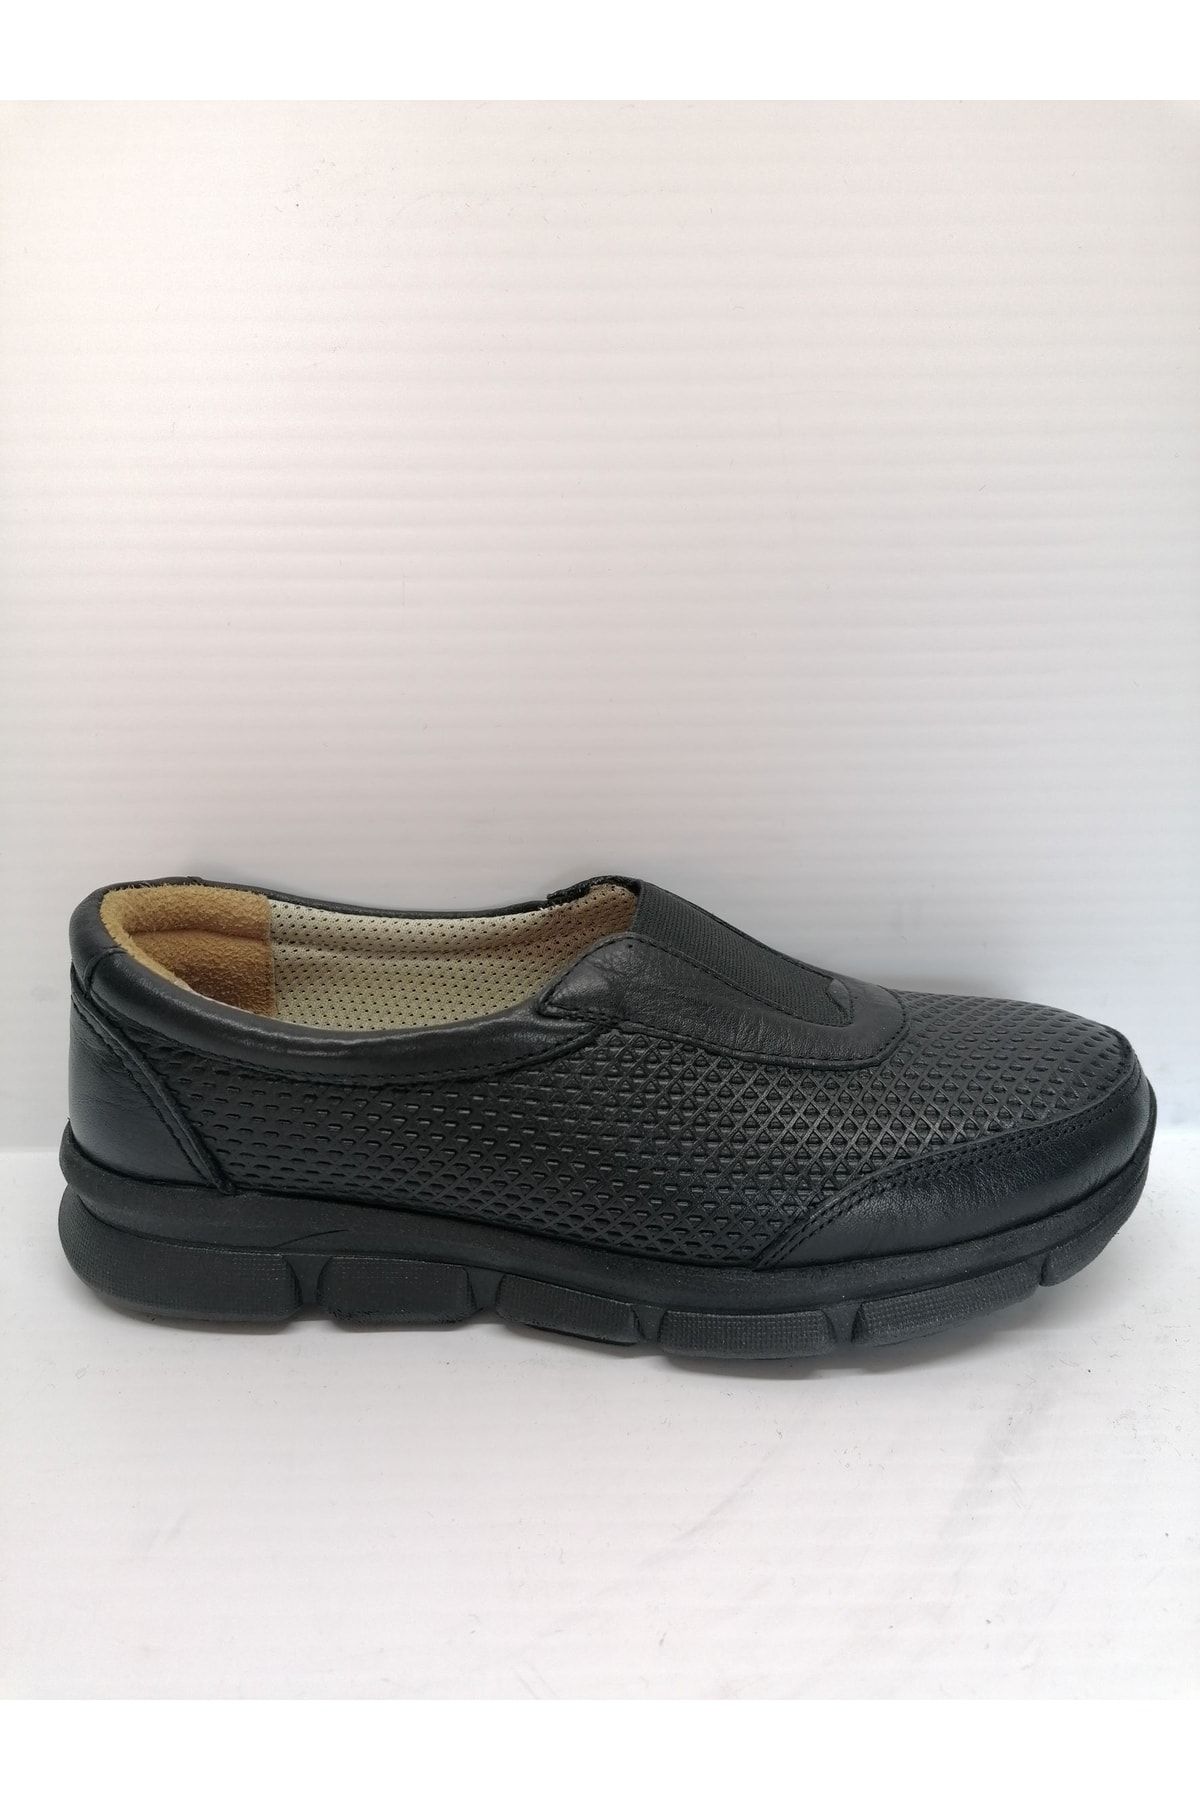 Belox Solmaz 2040 Siyah Renk Hakiki Deri Ortopedik Ayakkabı